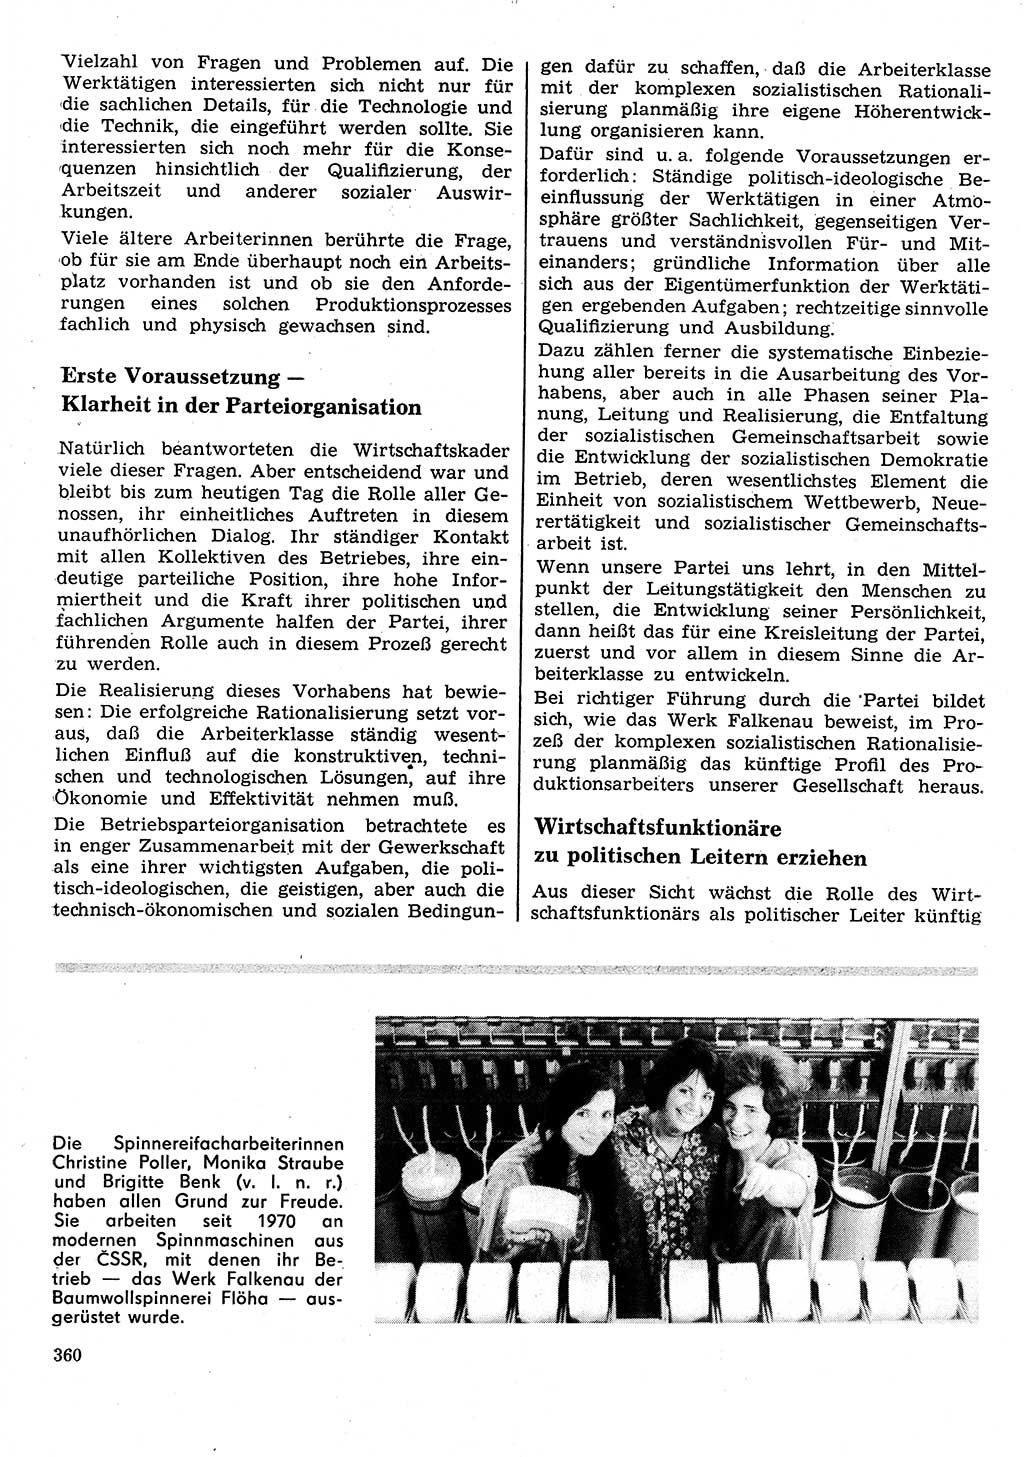 Neuer Weg (NW), Organ des Zentralkomitees (ZK) der SED (Sozialistische Einheitspartei Deutschlands) für Fragen des Parteilebens, 26. Jahrgang [Deutsche Demokratische Republik (DDR)] 1971, Seite 360 (NW ZK SED DDR 1971, S. 360)